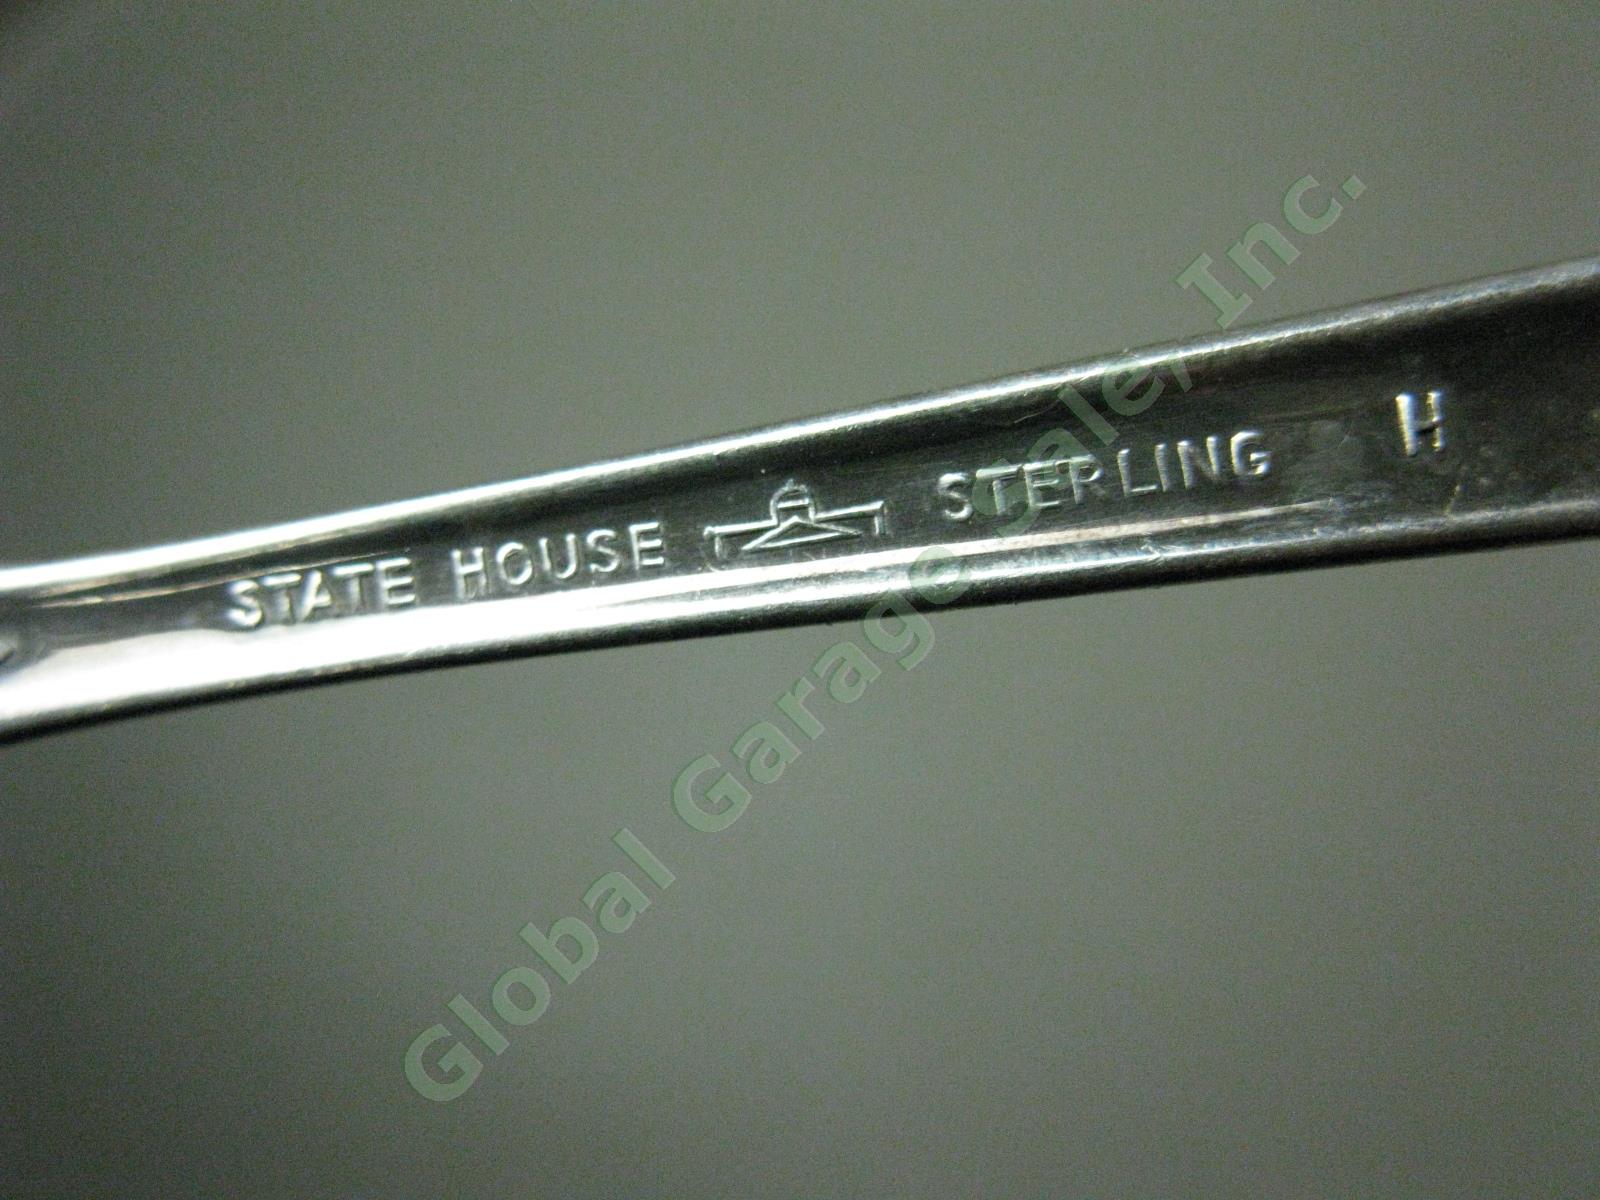 7 State House Inaugural Sterling Silver Teaspoons Spoons Silverware Flatware Set 4